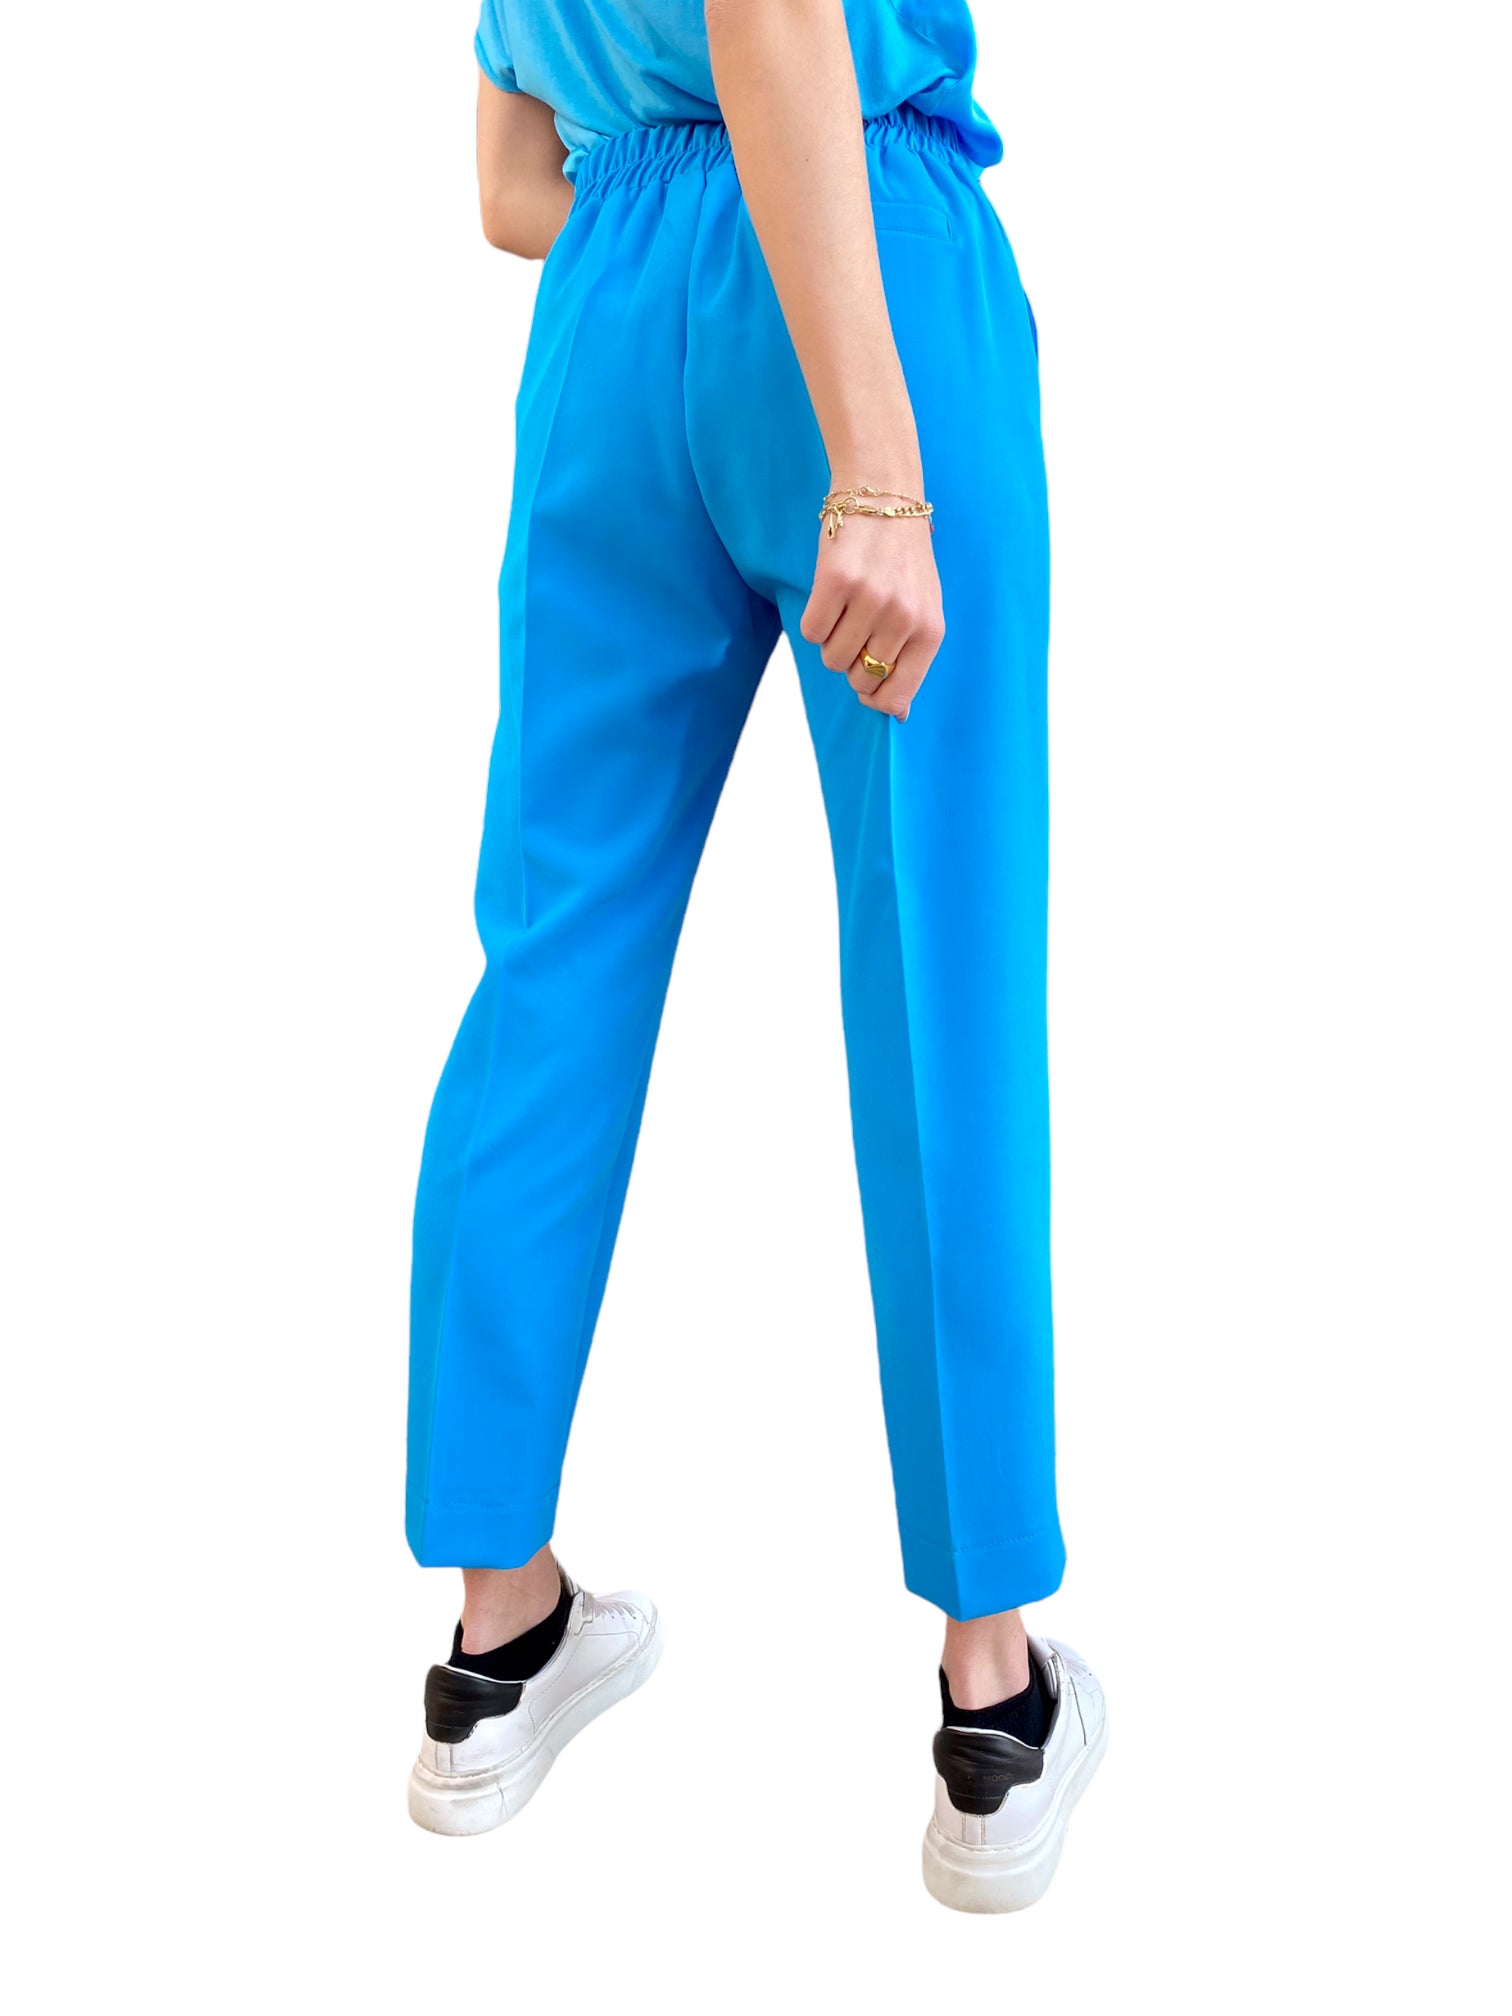 Maryley turquoise pants